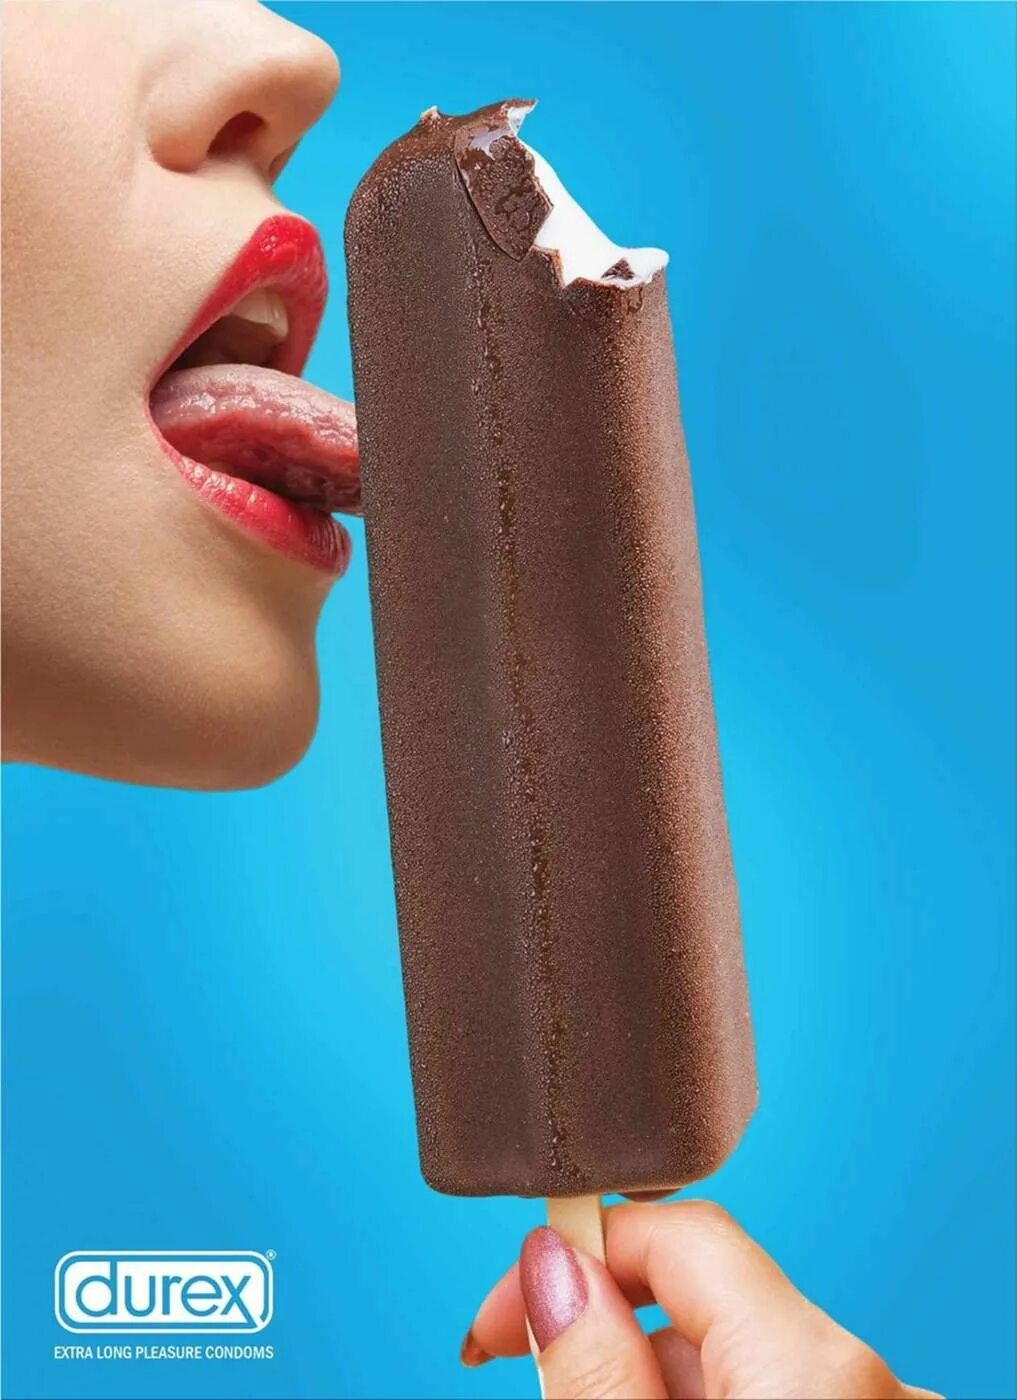 Long pleasure. Мороженое дюрекс. Облизывает мороженое. Креативная реклама мороженного. Лижет мороженое.